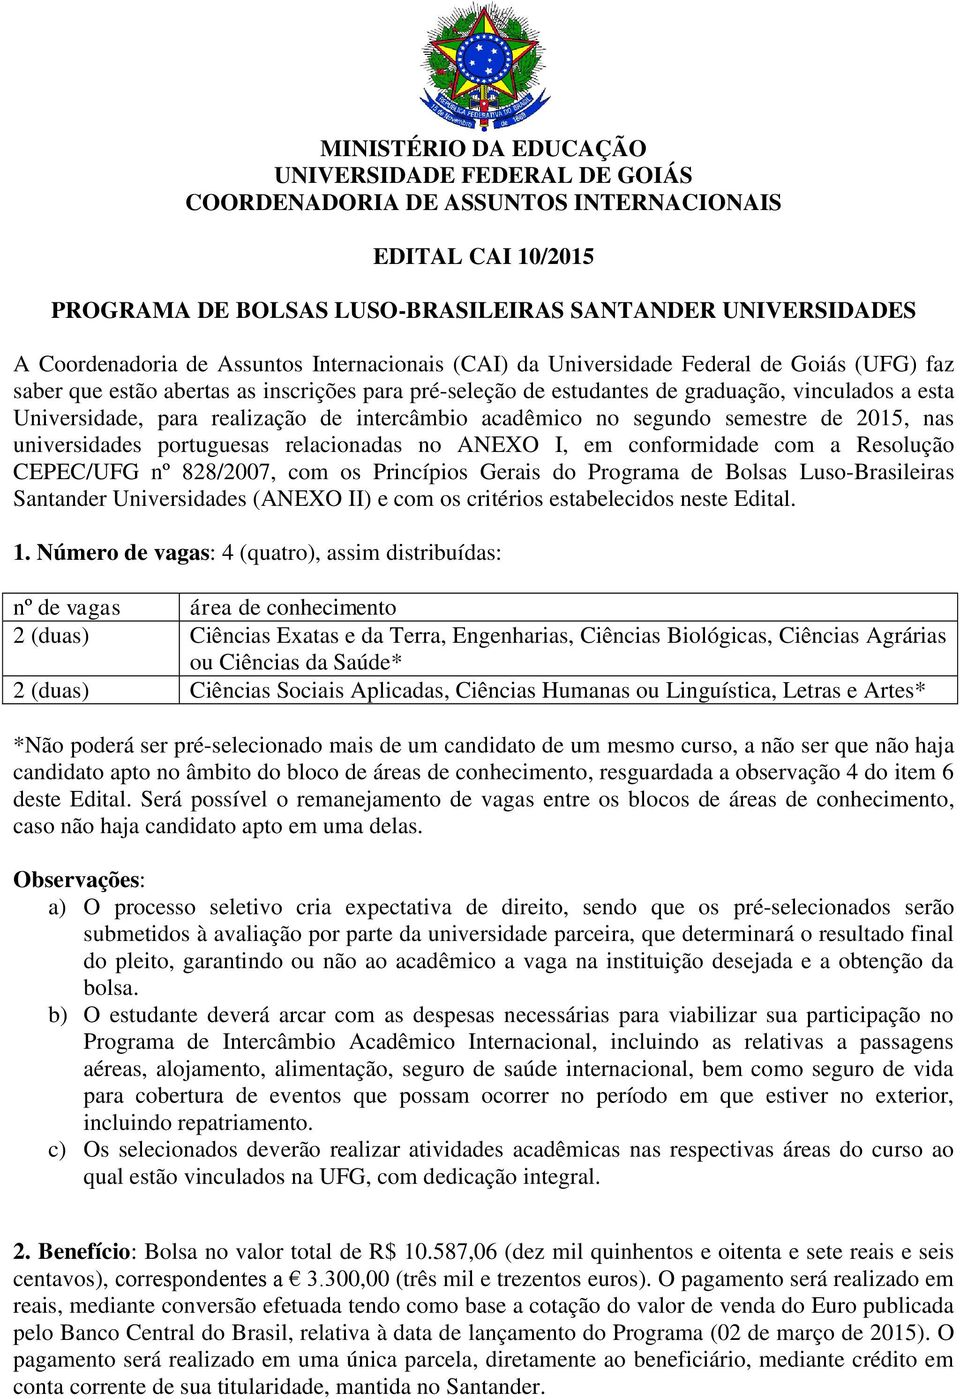 realização de intercâmbio acadêmico no segundo semestre de 2015, nas universidades portuguesas relacionadas no ANEXO I, em conformidade com a Resolução CEPEC/UFG nº 828/2007, com os Princípios Gerais